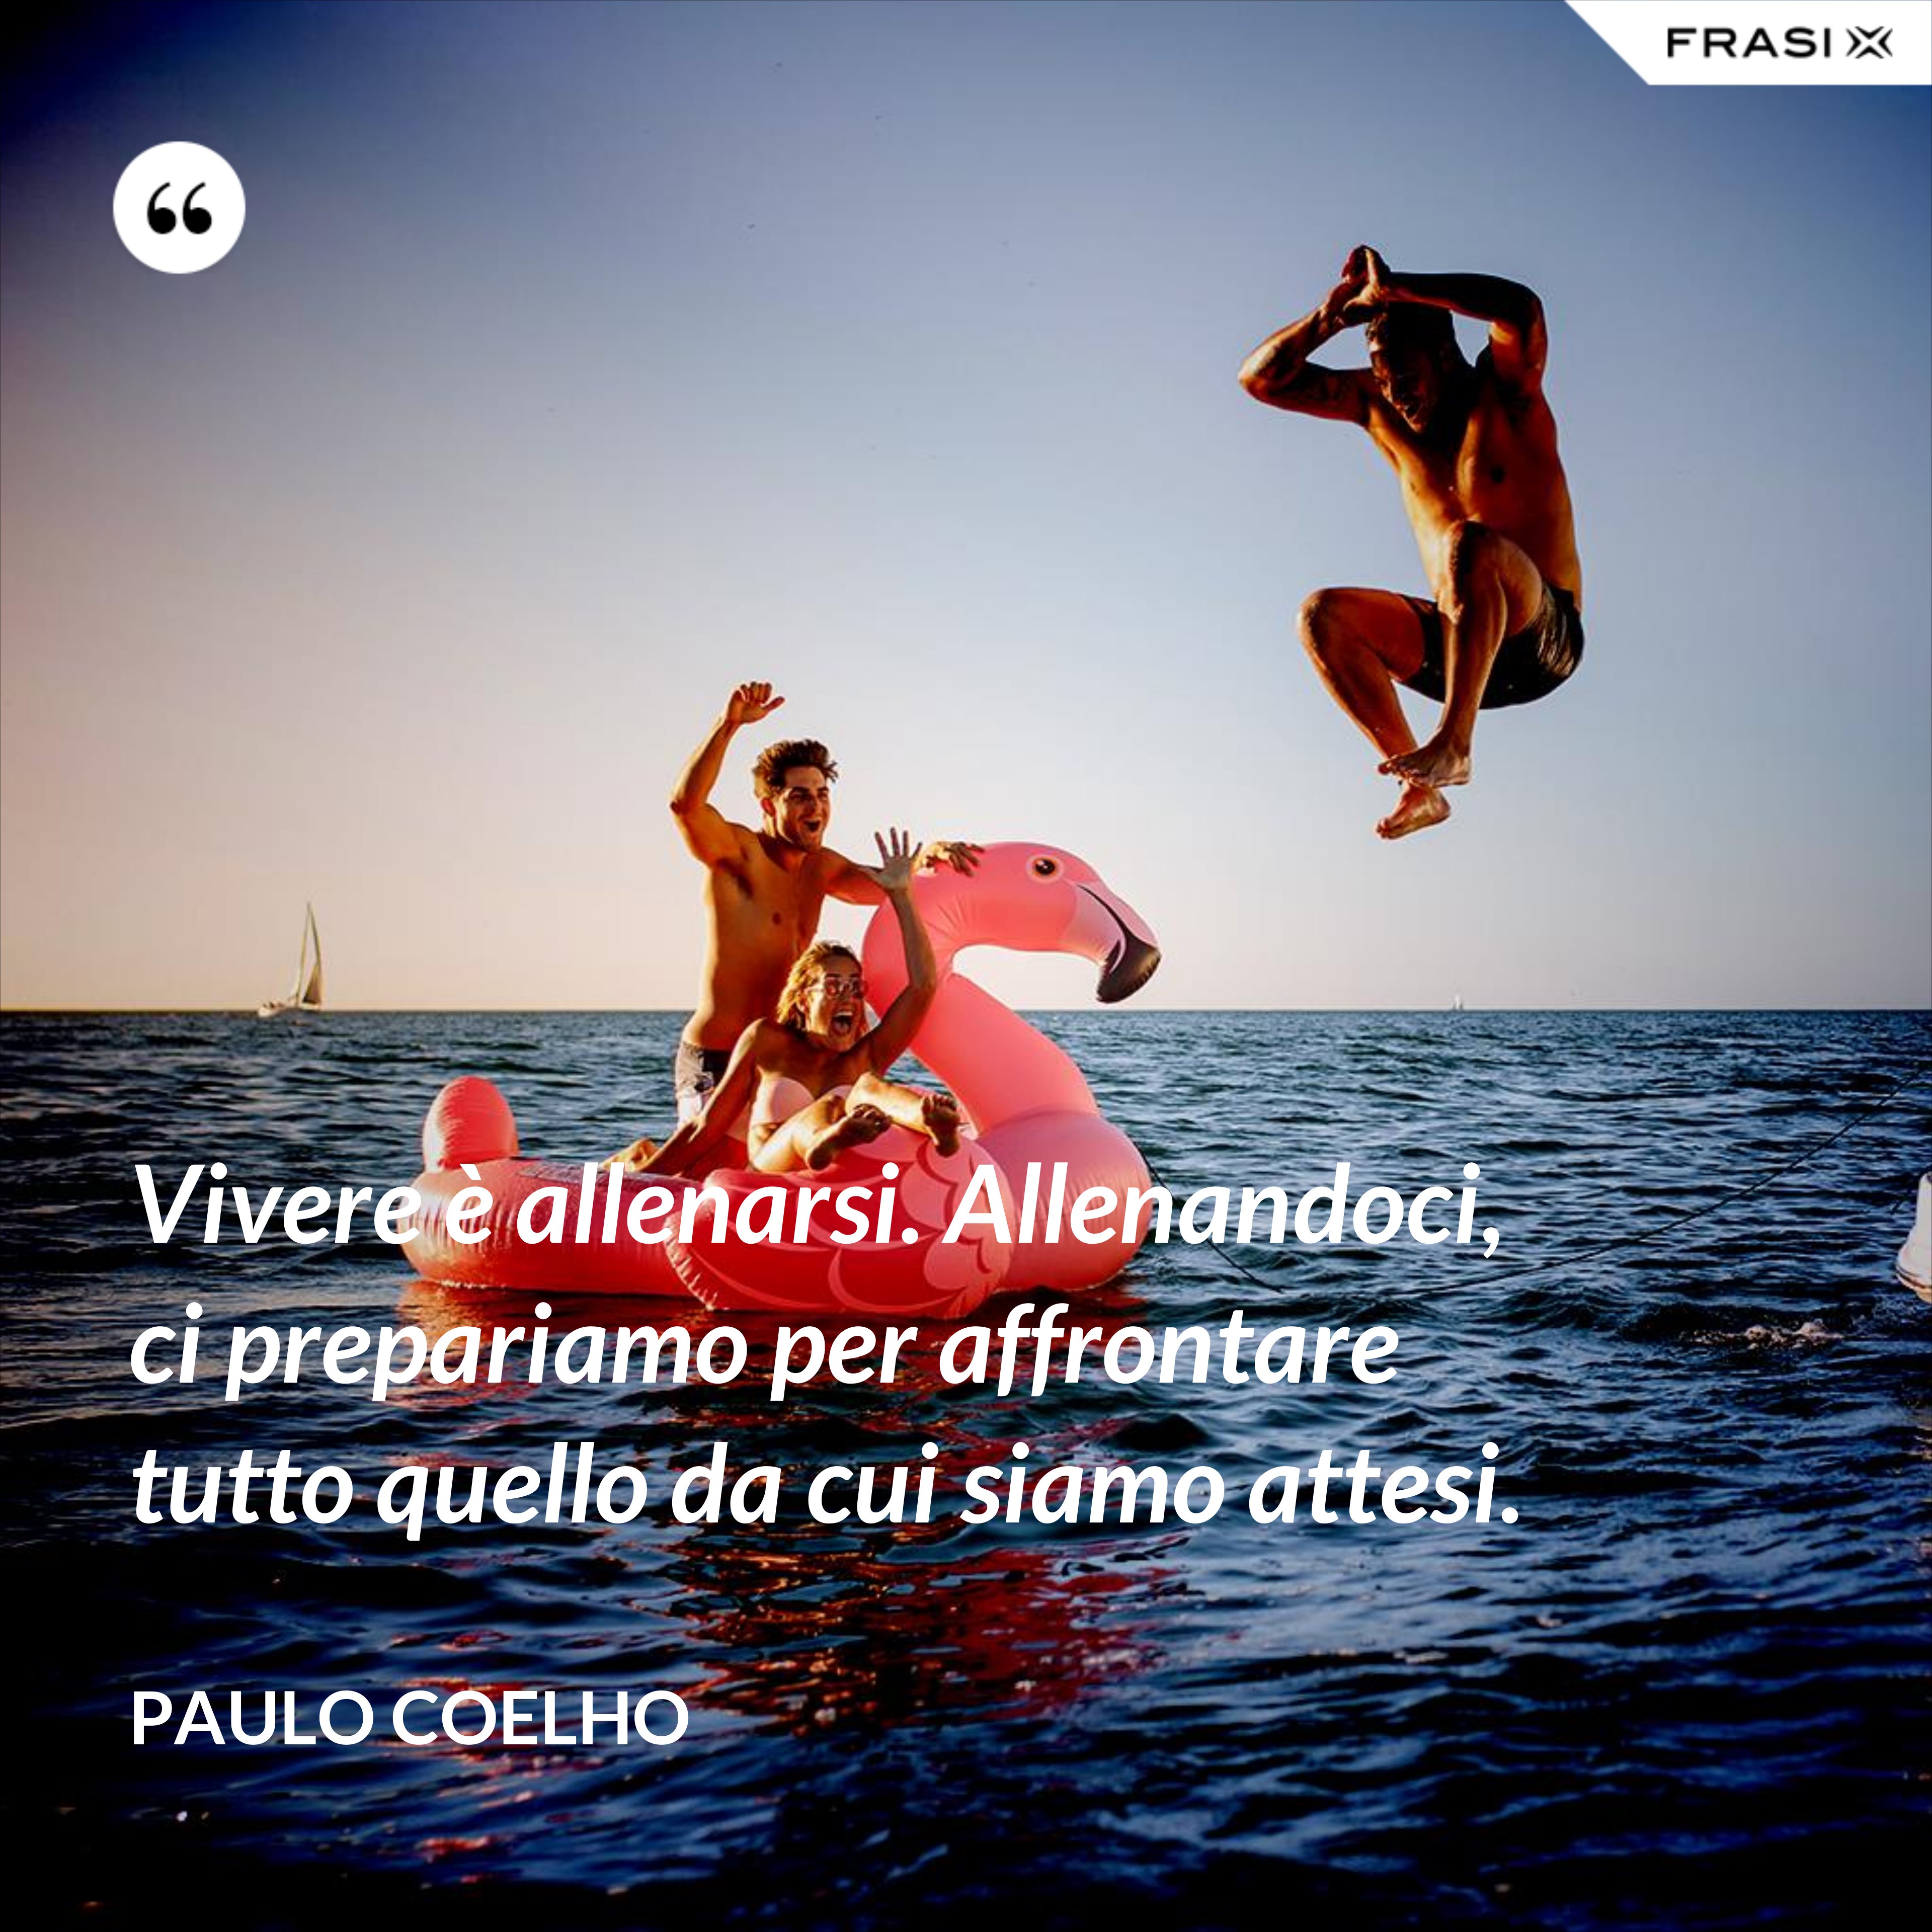 Vivere è allenarsi. Allenandoci, ci prepariamo per affrontare tutto quello da cui siamo attesi. - Paulo Coelho